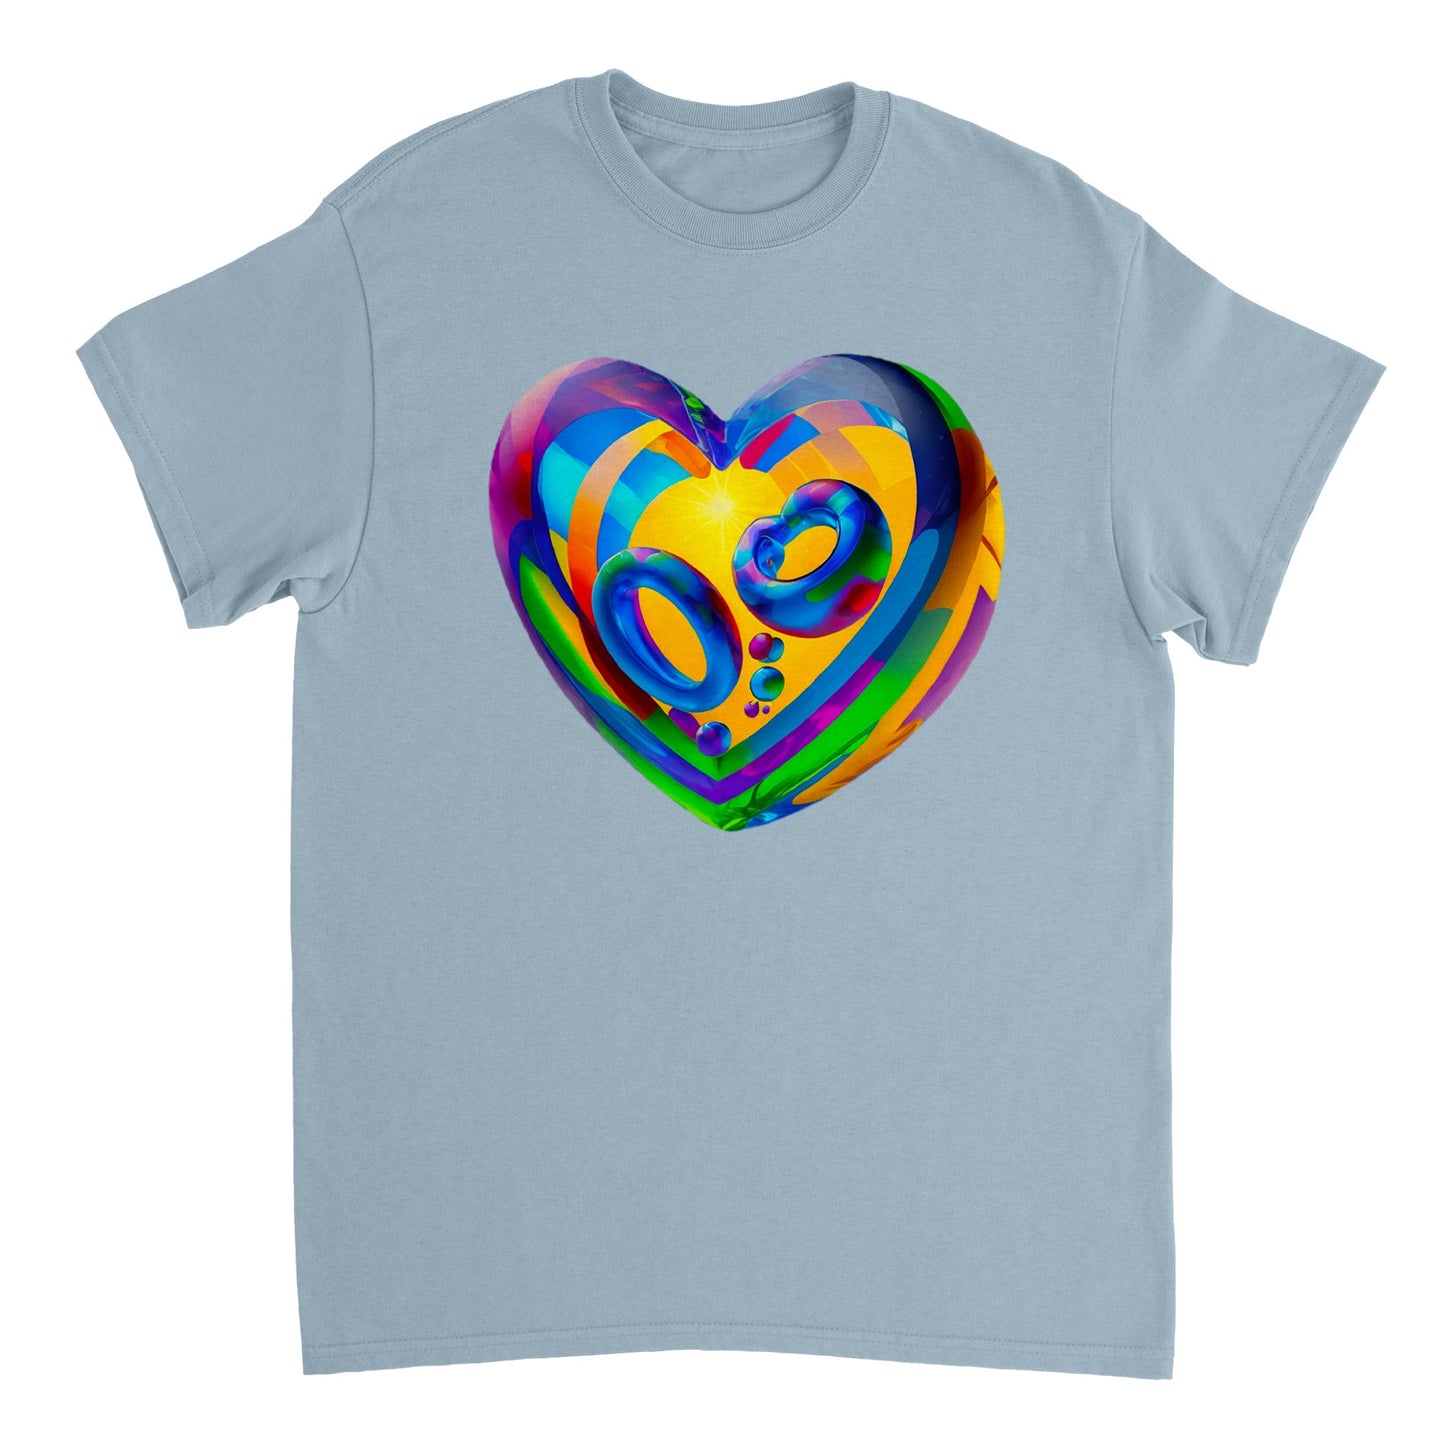 Love Heart - Heavyweight Unisex Crewneck T-shirt 97